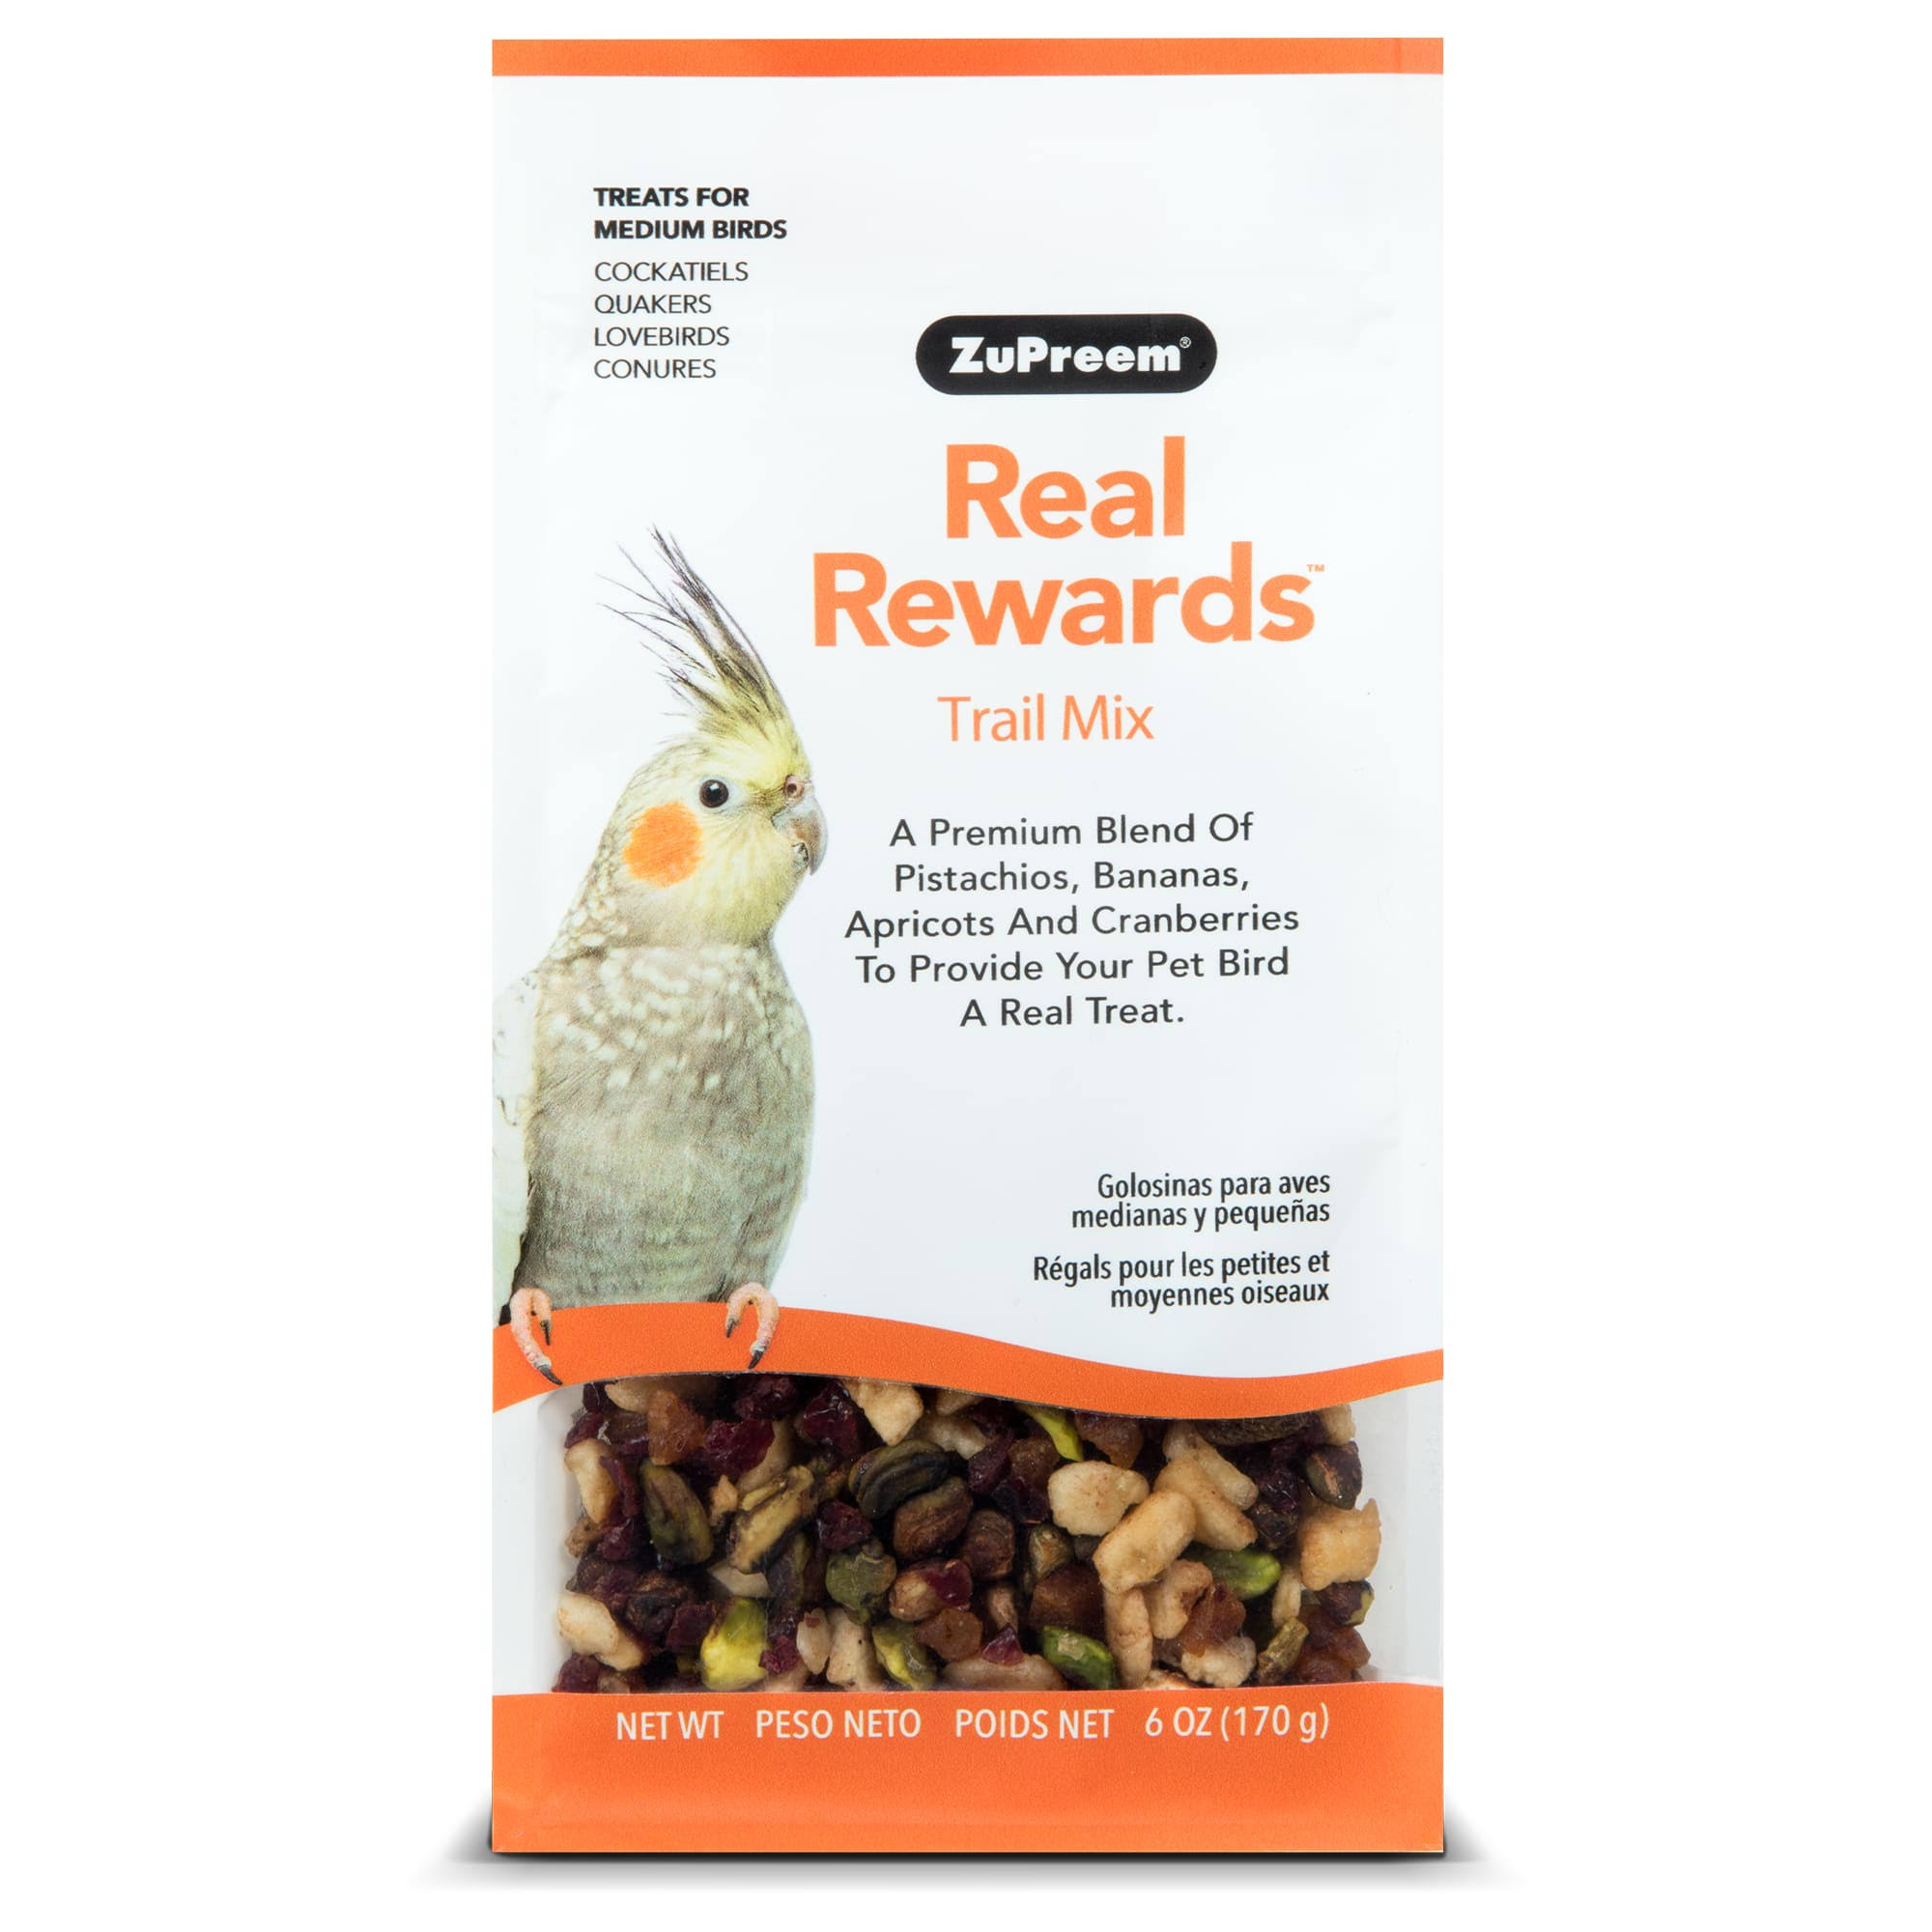 ZuPreem Real Rewards Trail Mix Medium Bird Treats Cockatiel Keet Food - 6oz